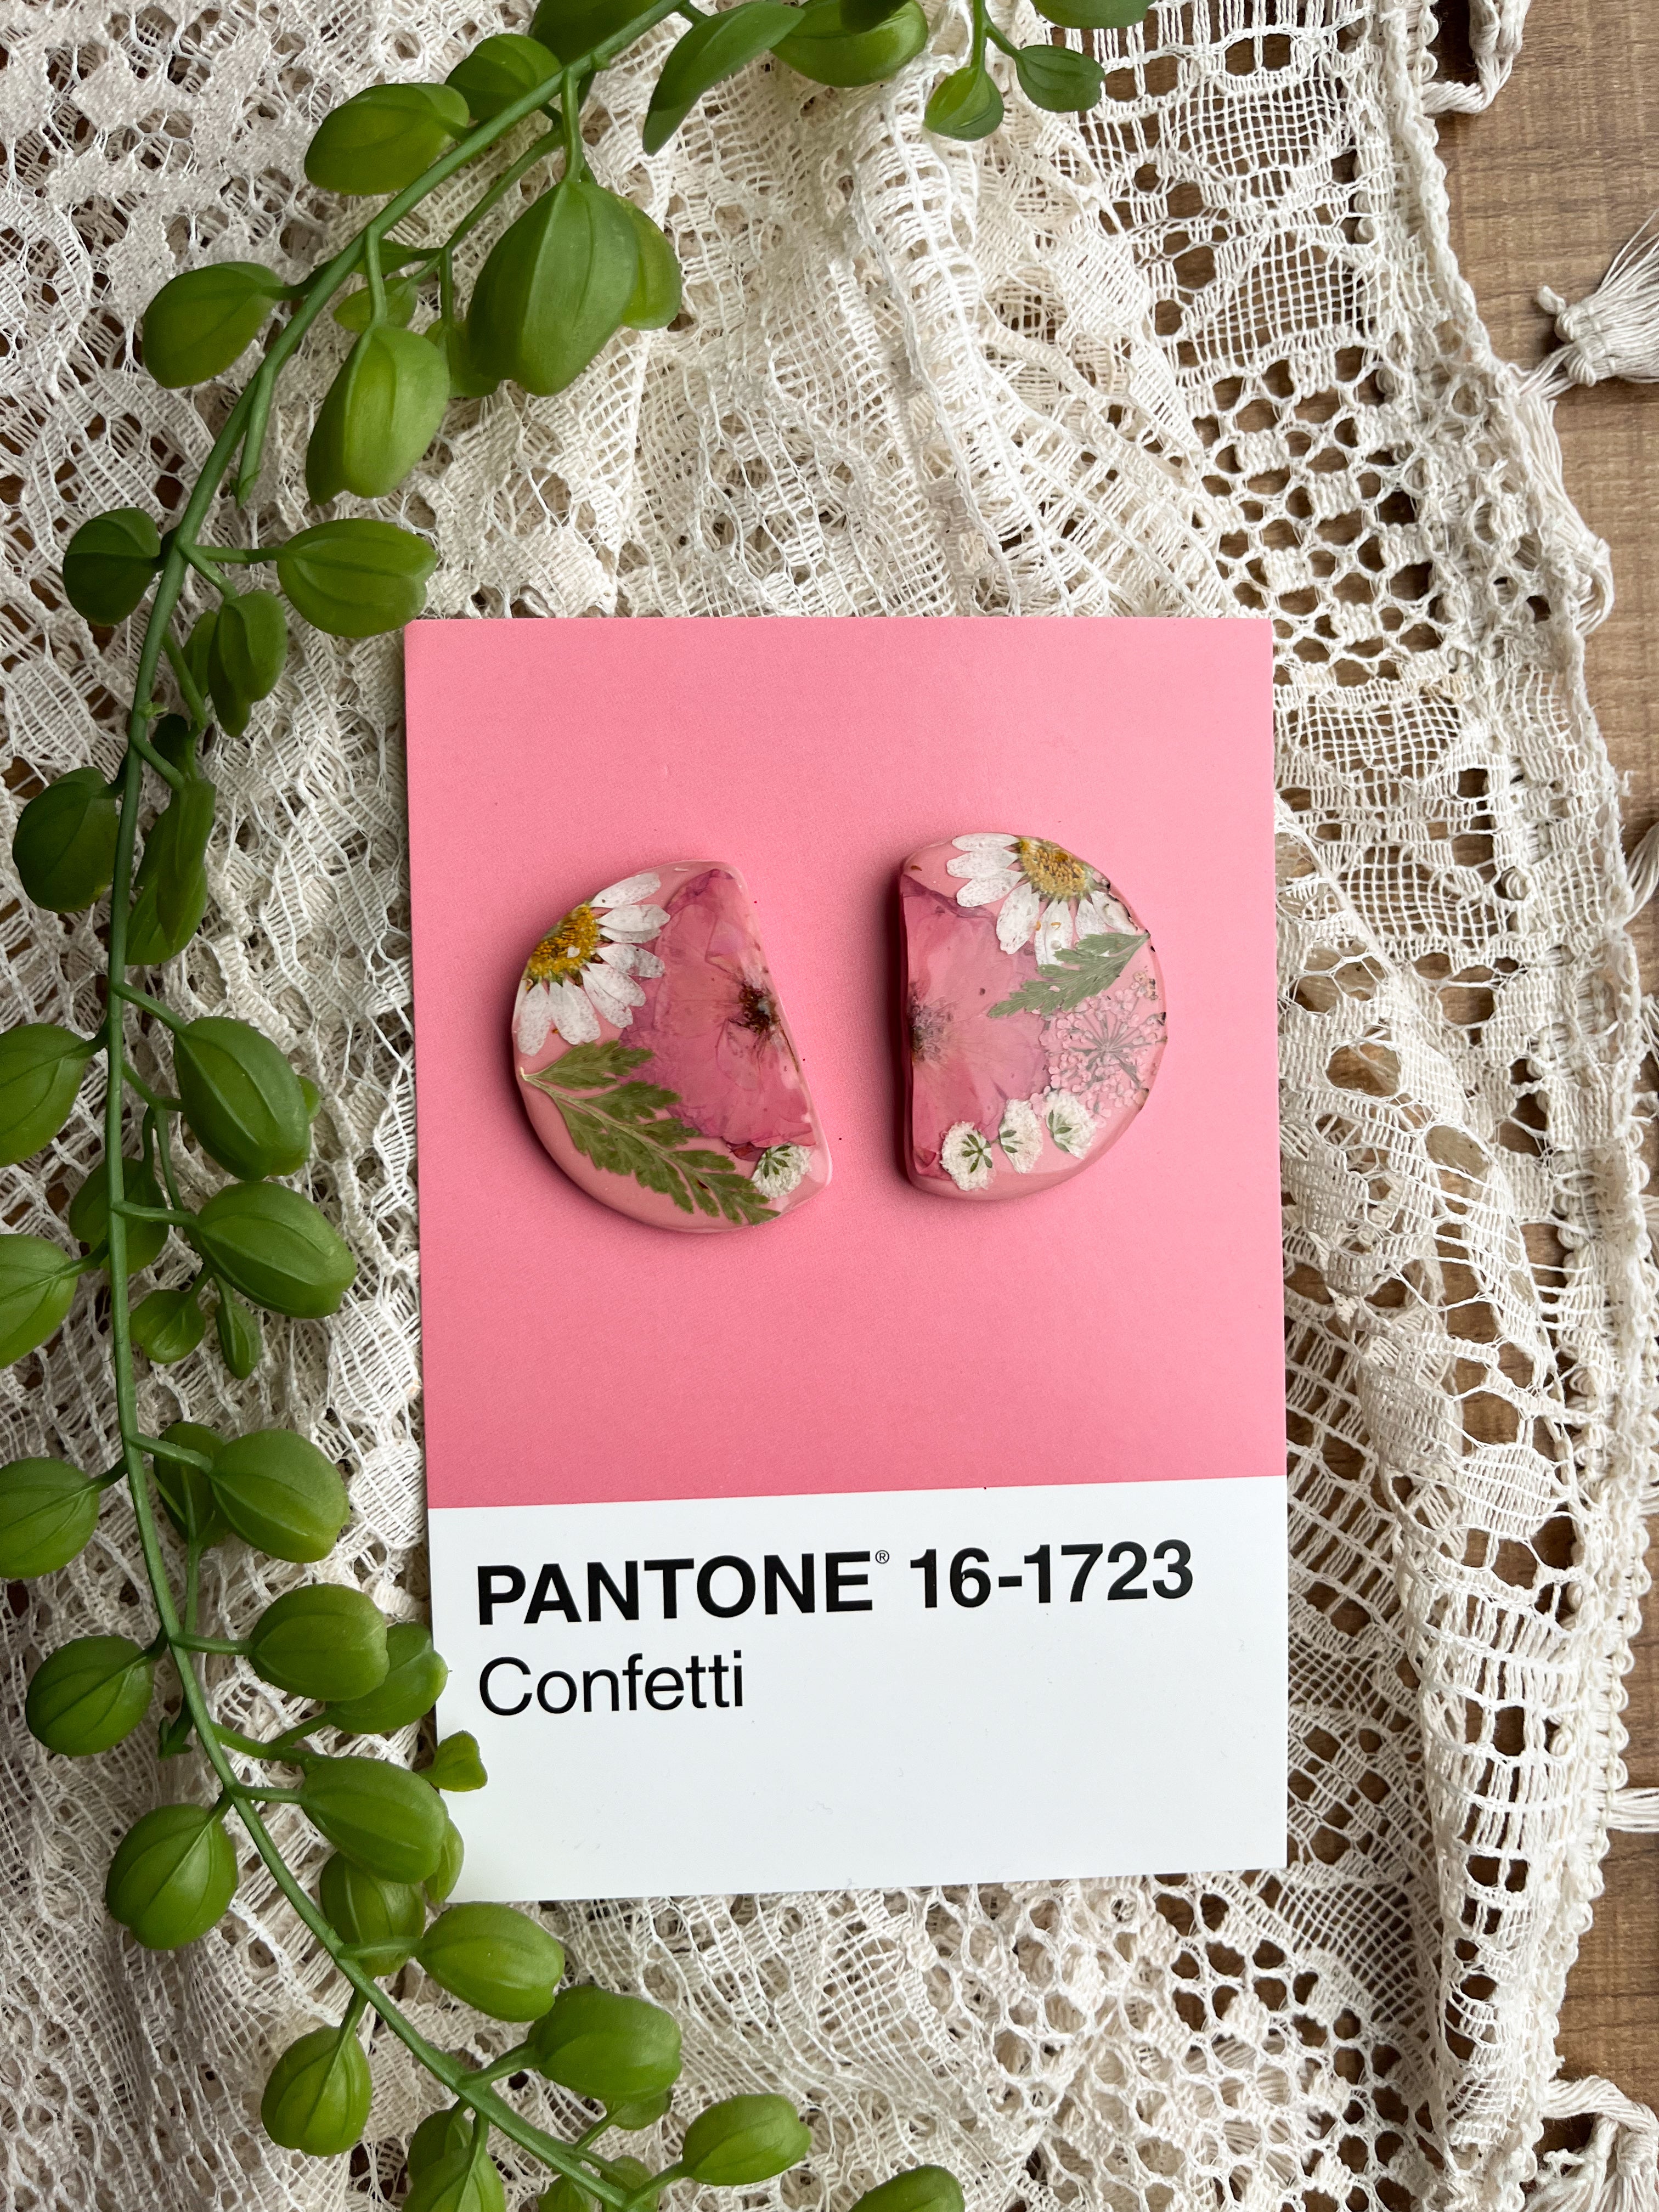 Pantone 16-1723 Confetti